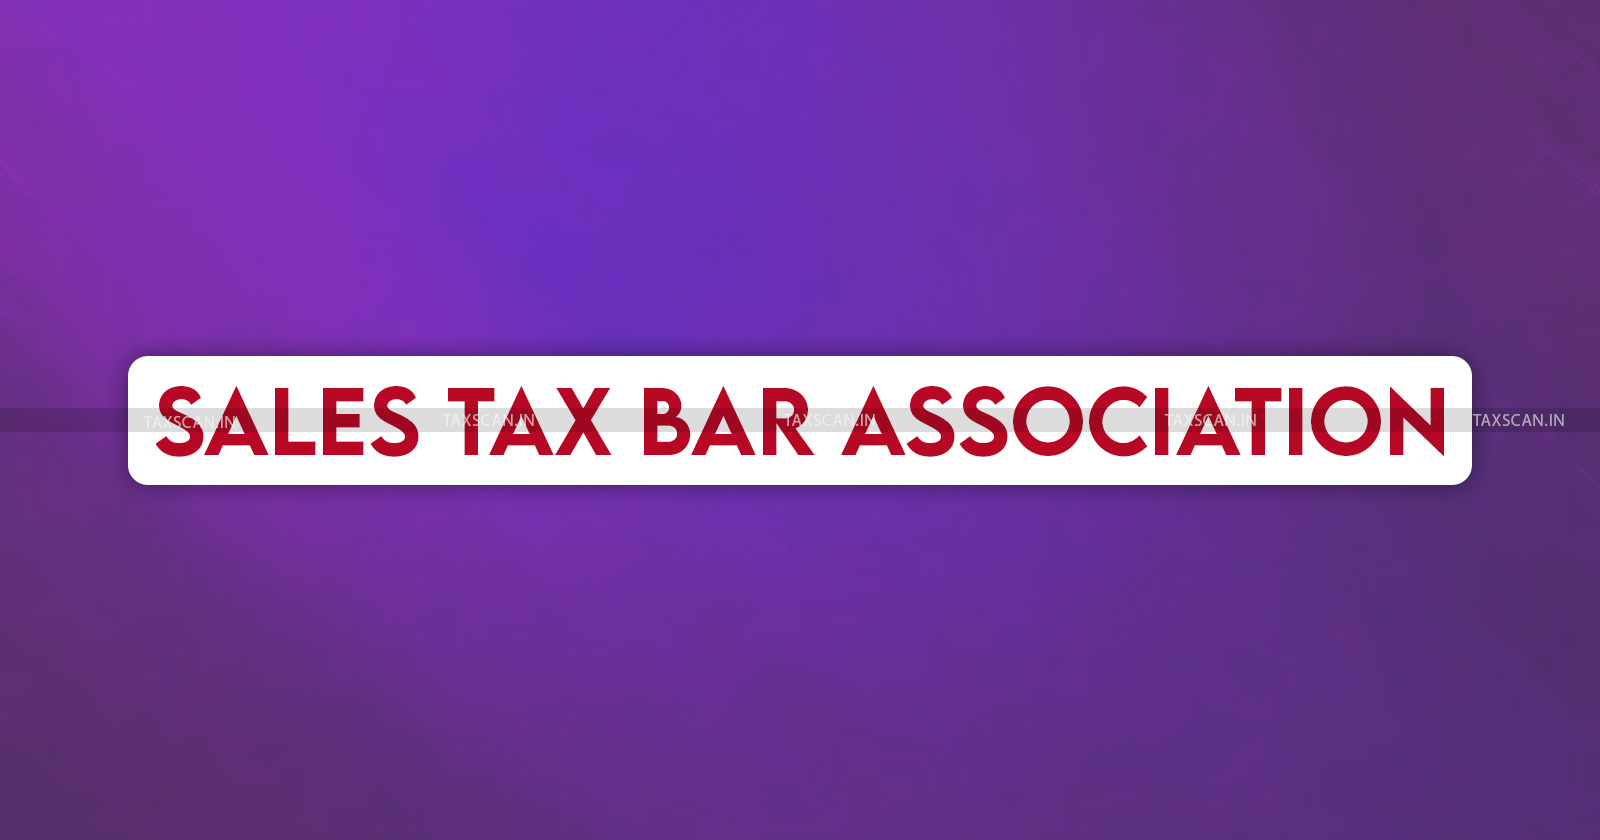 GST and VAT Issues - GST - VAT - Department of Trade and Taxes - Delhi Tax Department - Sales Tax Bar Association - VAT Issues Delhi 2024 - Taxscan